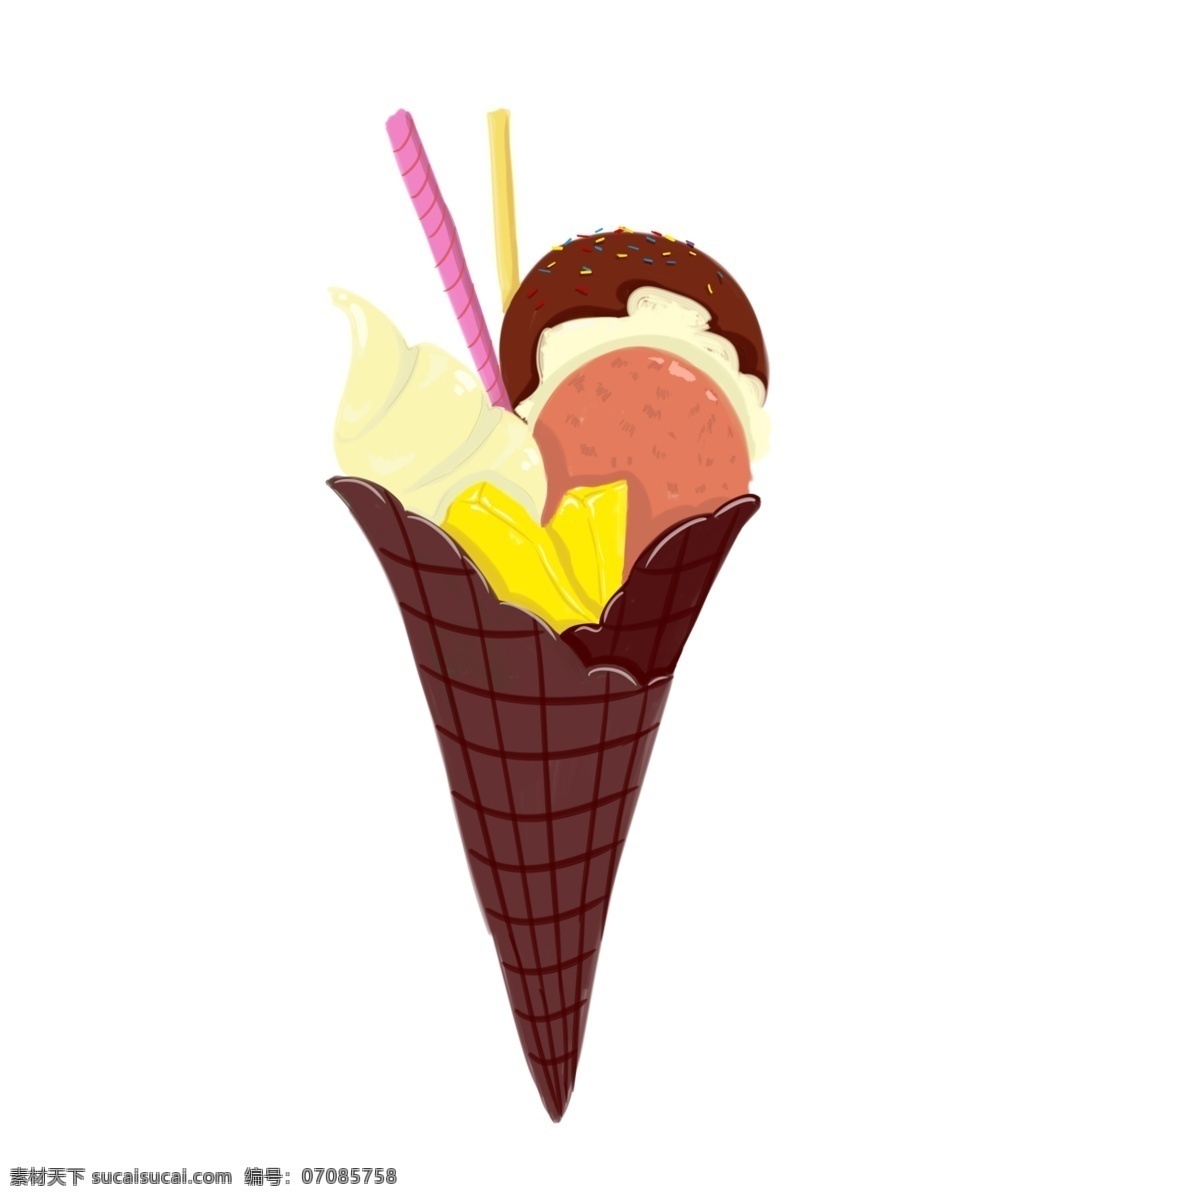 美味 小吃 冰淇淋 插画 小吃冰淇淋 卡通插画 小吃插画 休闲小吃 美食插画 食品插画 巧克力蛋卷